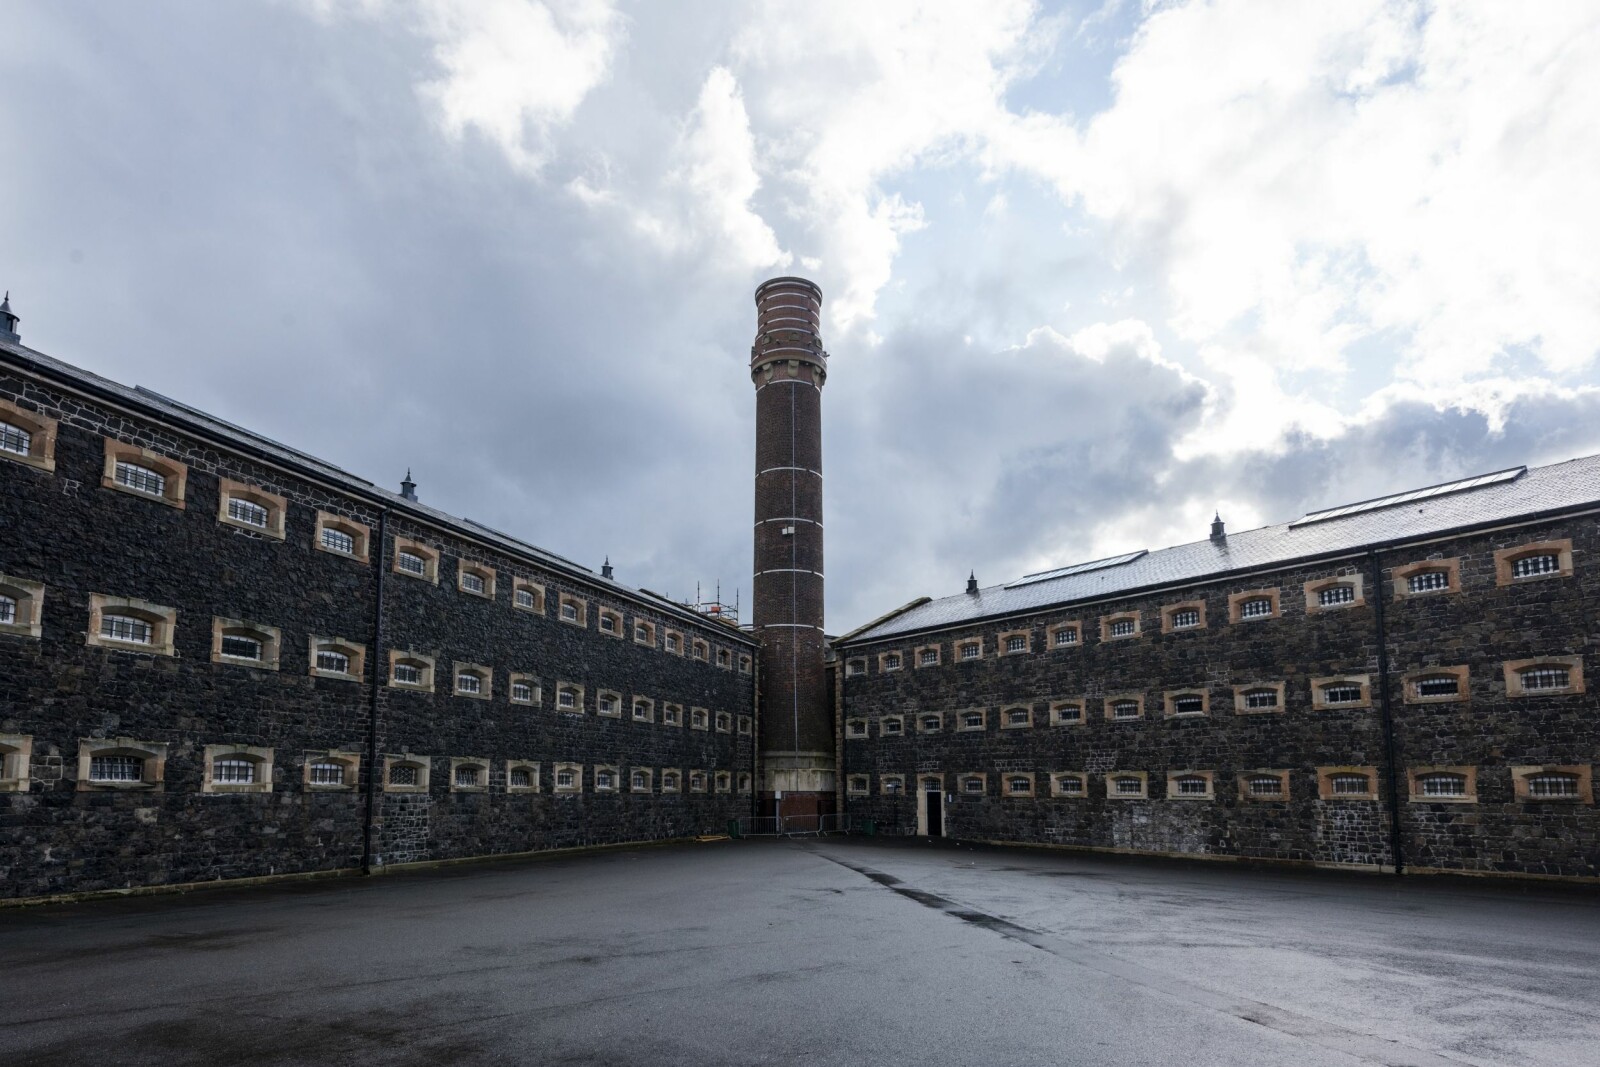 <b>OVERVÅKING:</b> Crumlin Road Prison ble bygget etter filosofen Jeremy Benthams ideer om overvåking. Som utformingen av tårnet.